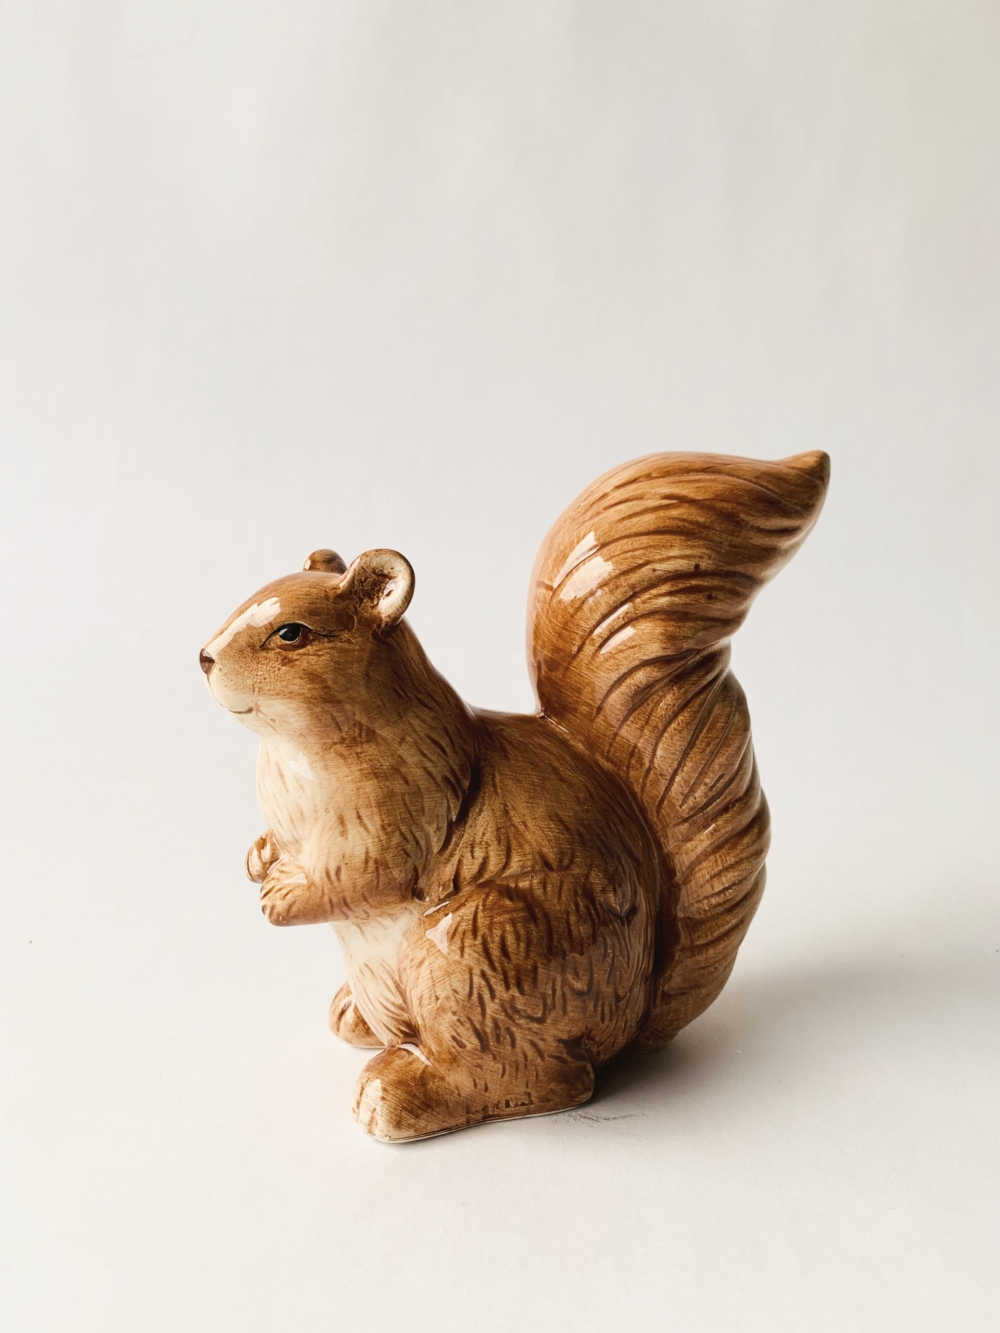 Et lite søtt ekorn i keramikk til dekorasjon. Måler 13 cm i høyden. Pynt opp lysfatet med dette søte lille ekornet. 